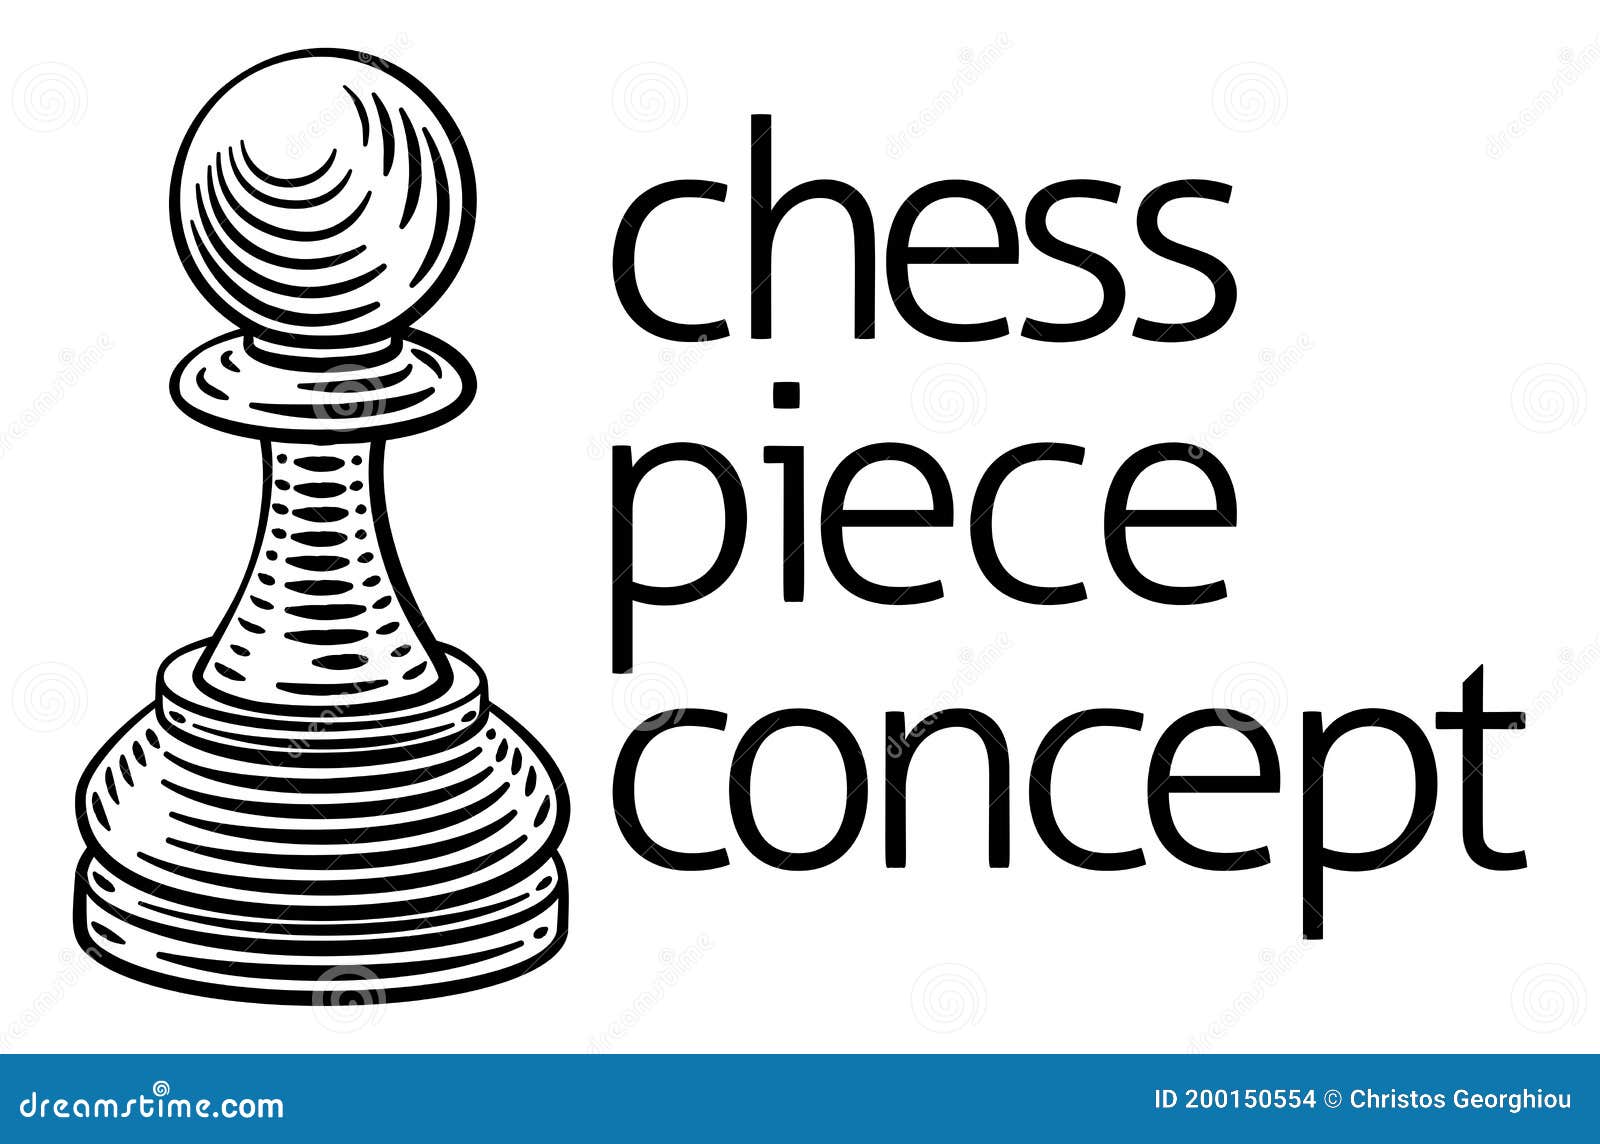 peão xadrez - Pesquisa Google  Libre de vectores, Piezas de ajedrez,  Tatuaje árbol de la vida